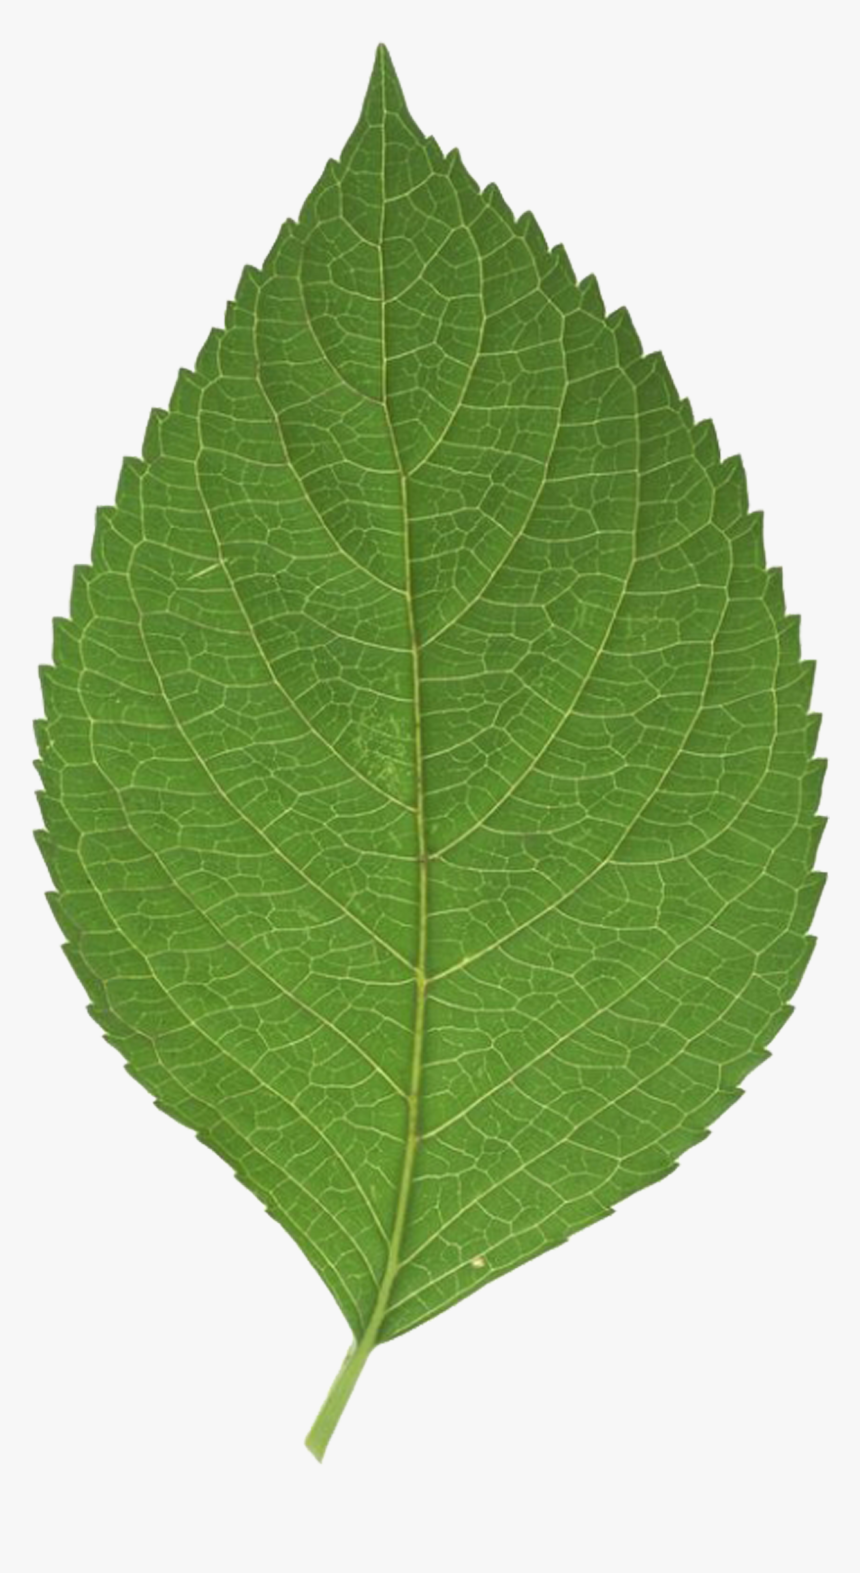 Leaf Png Download - Green Leaf Transparent Background, Png Download, Free Download